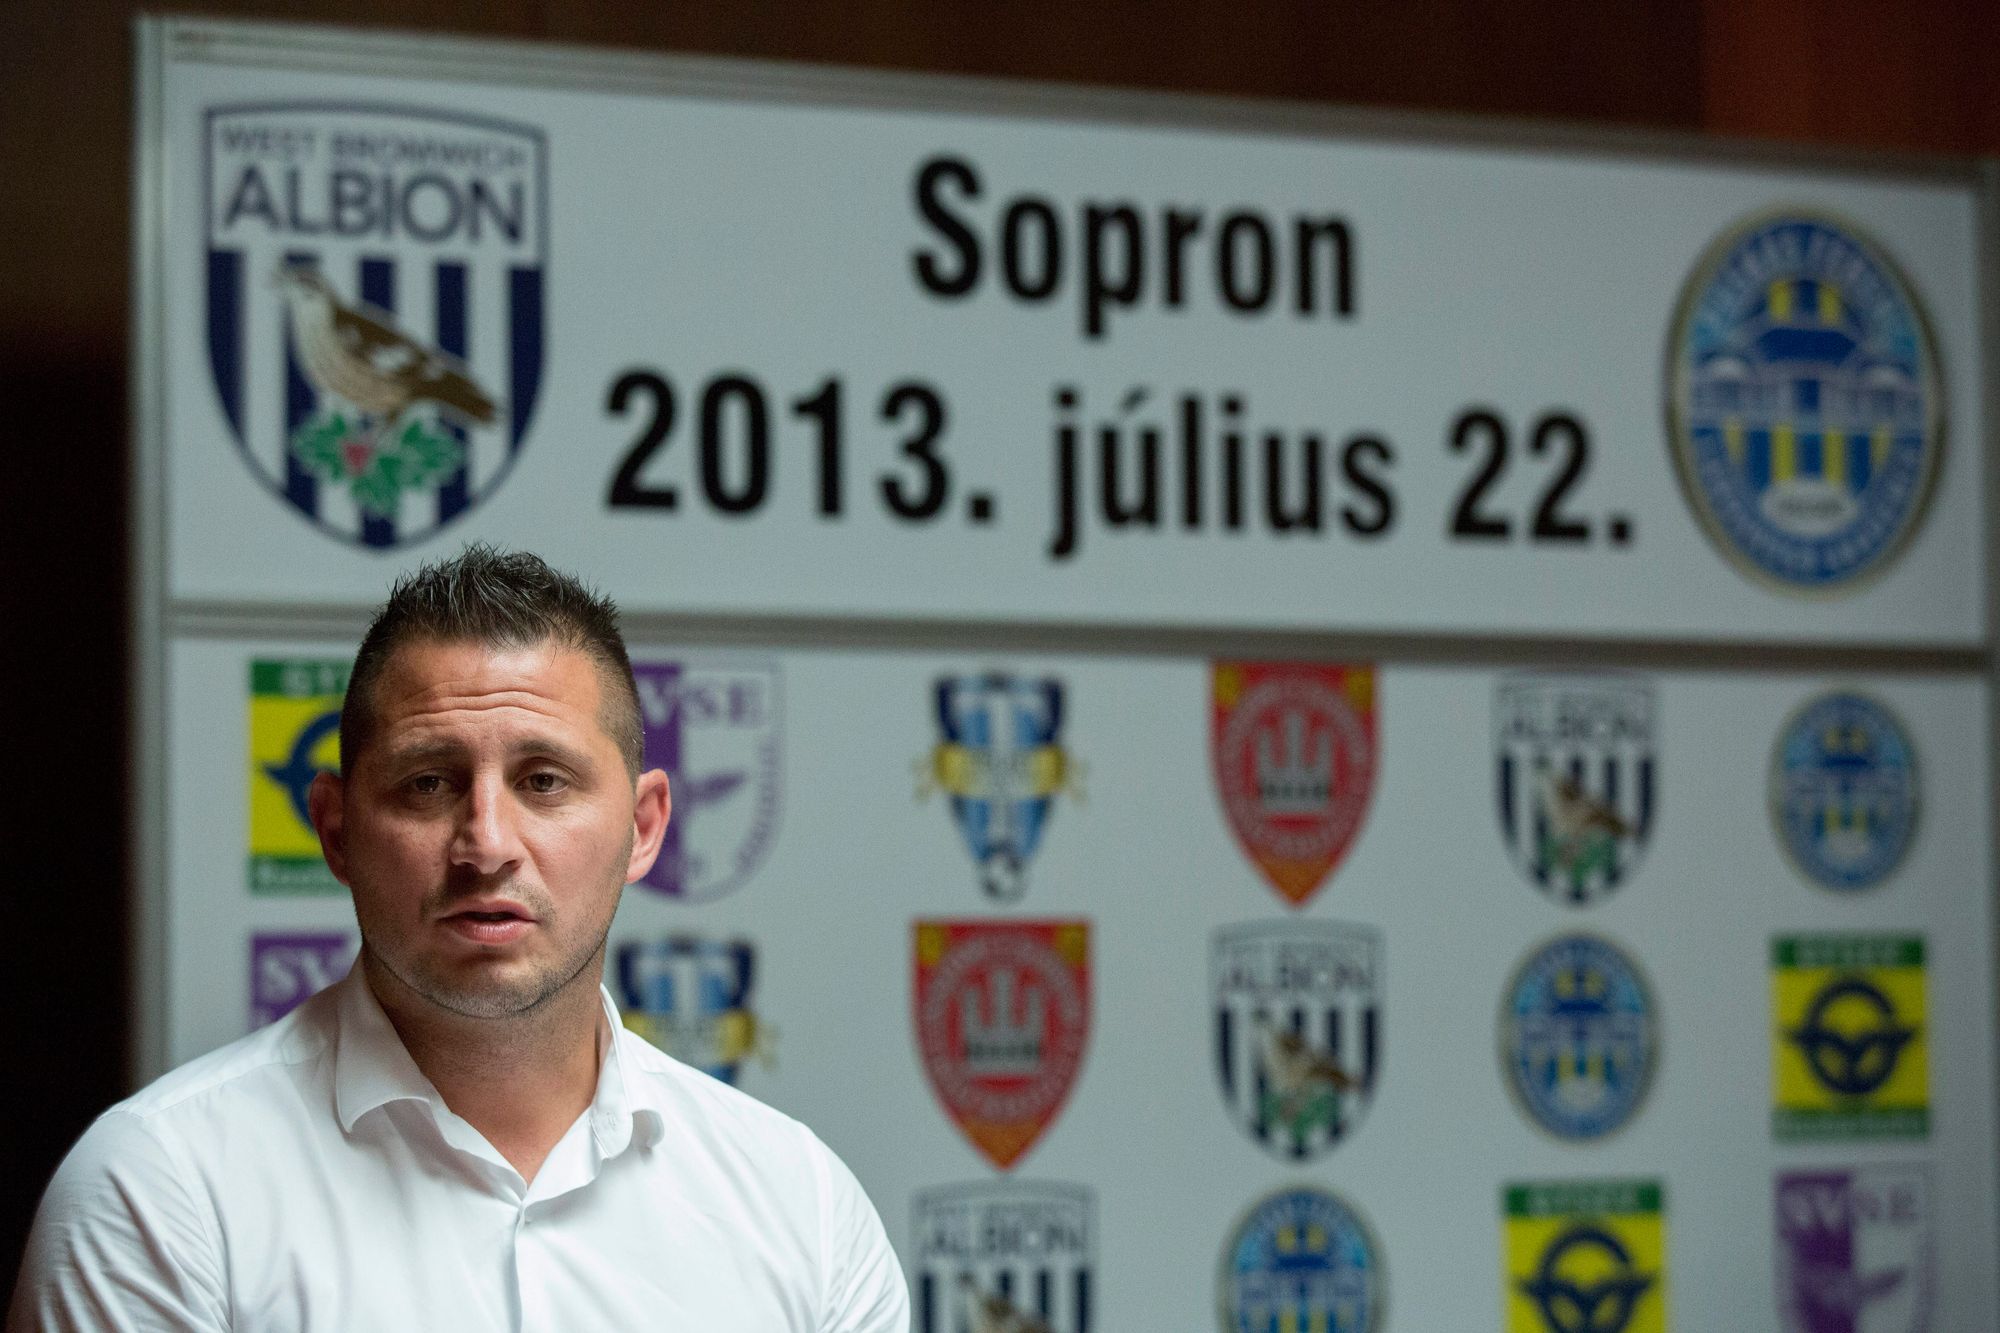 Csiszár Ákos, a Soproni VSE ügyvezetője a Puskás Akadémia-West Bromwich Albion labdarúgó-mérkőzés sajtótájékoztatóján a soproni Hotel Sopronban 2013. július 2-án. A mérkőzést július 22-én tartják Sopronban. MTI Fotó: Nyikos Péter